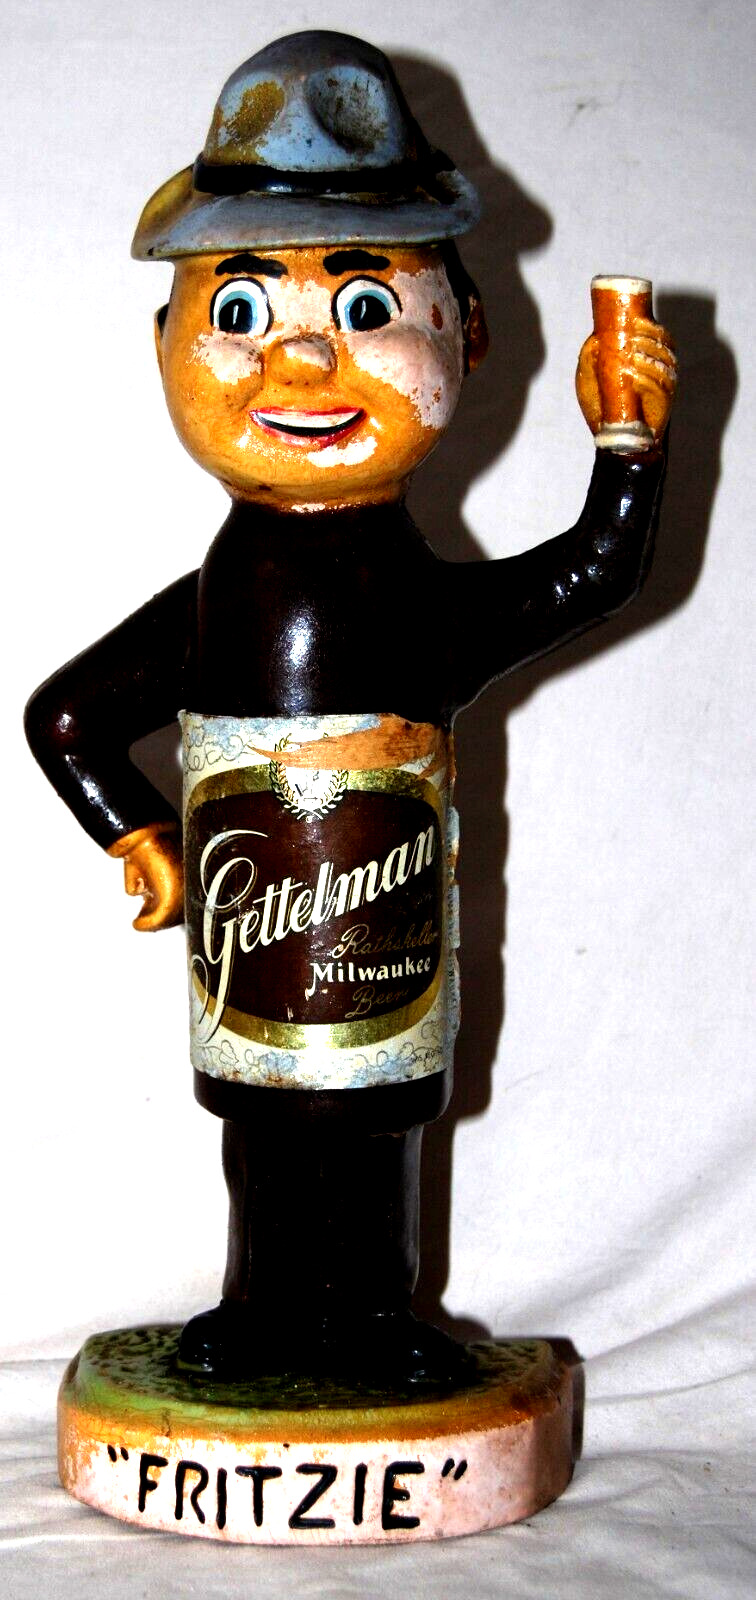 Gettelman Milwaukee beer \